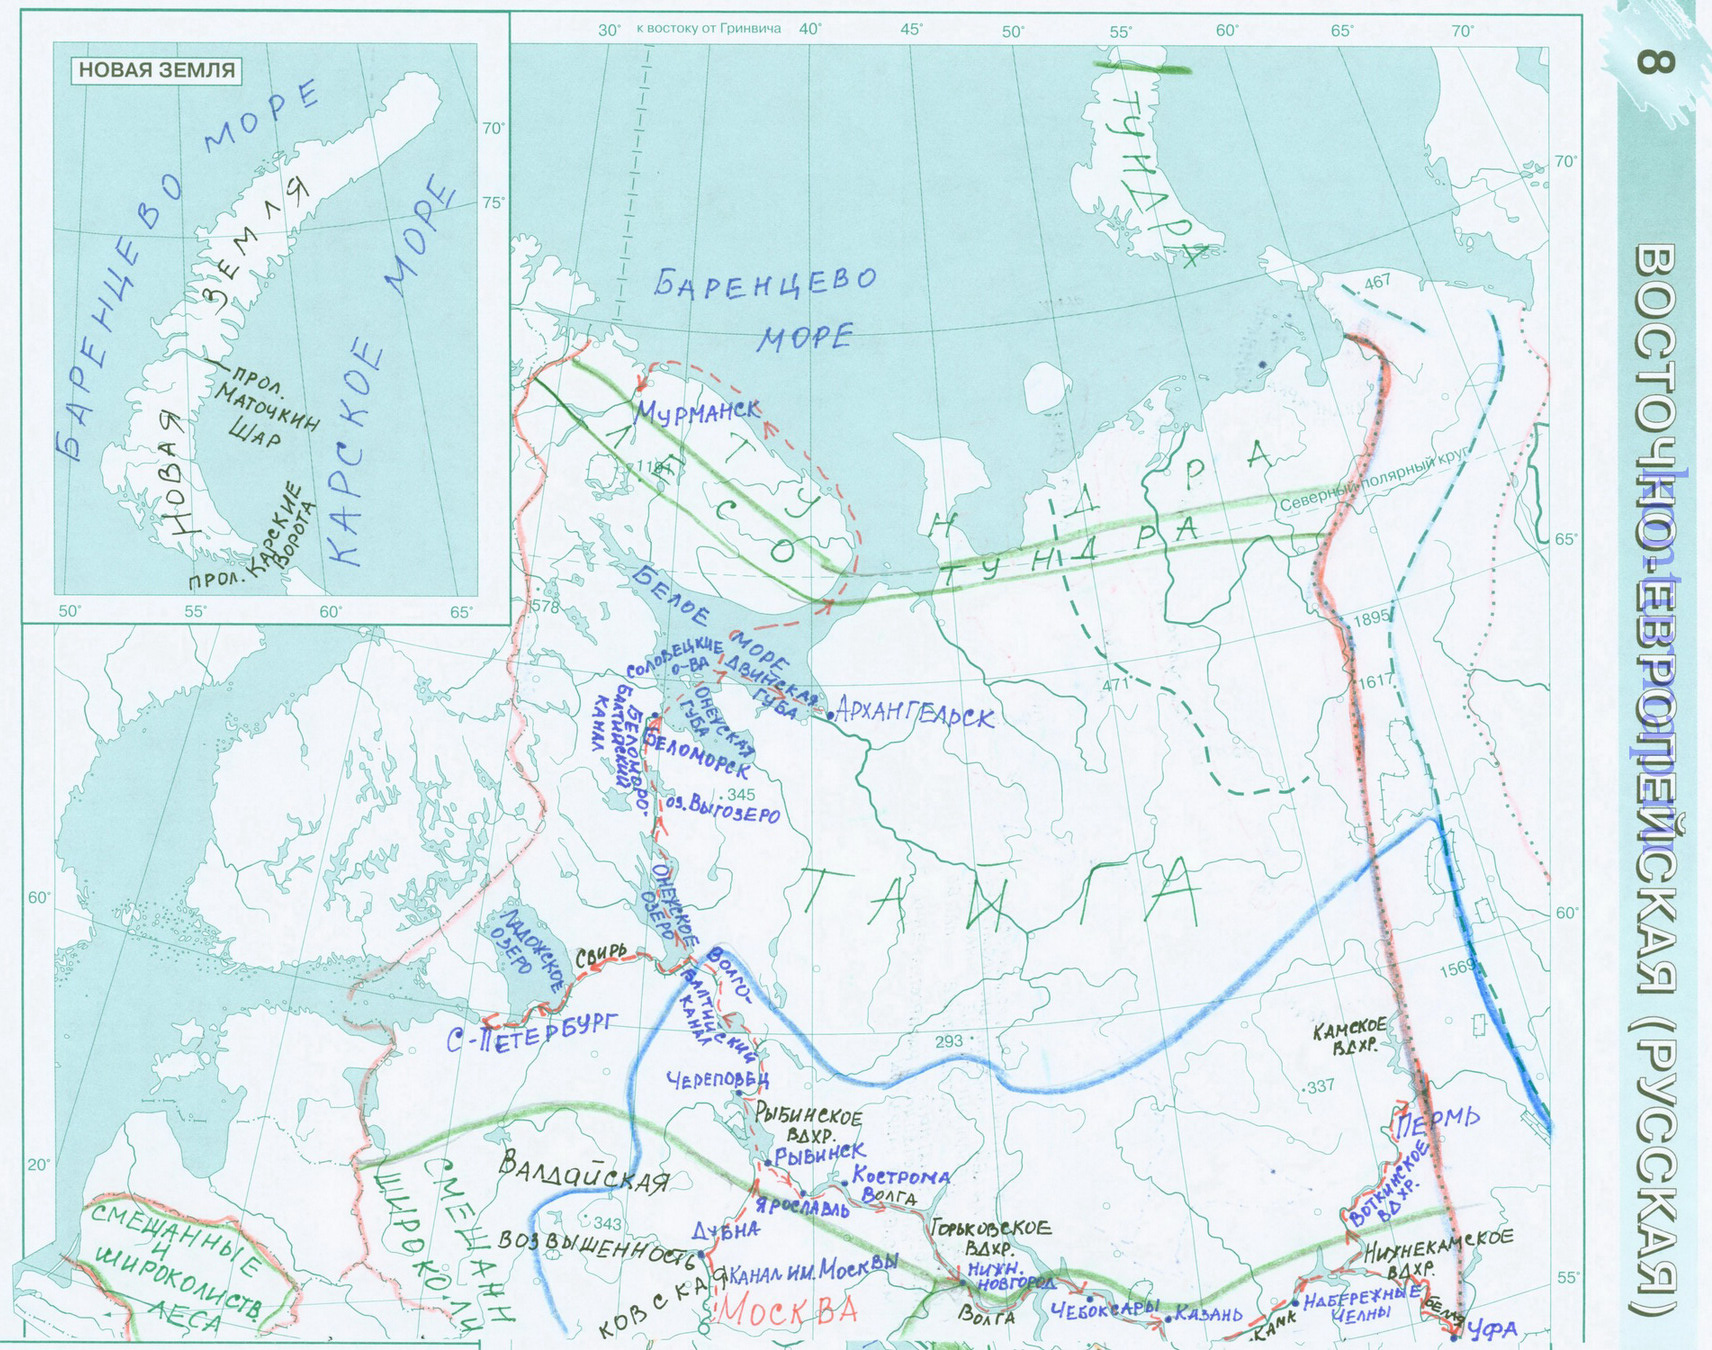 Делаем домашнее задание контурную карту по географии 8 класса пауночно ледовитый океан